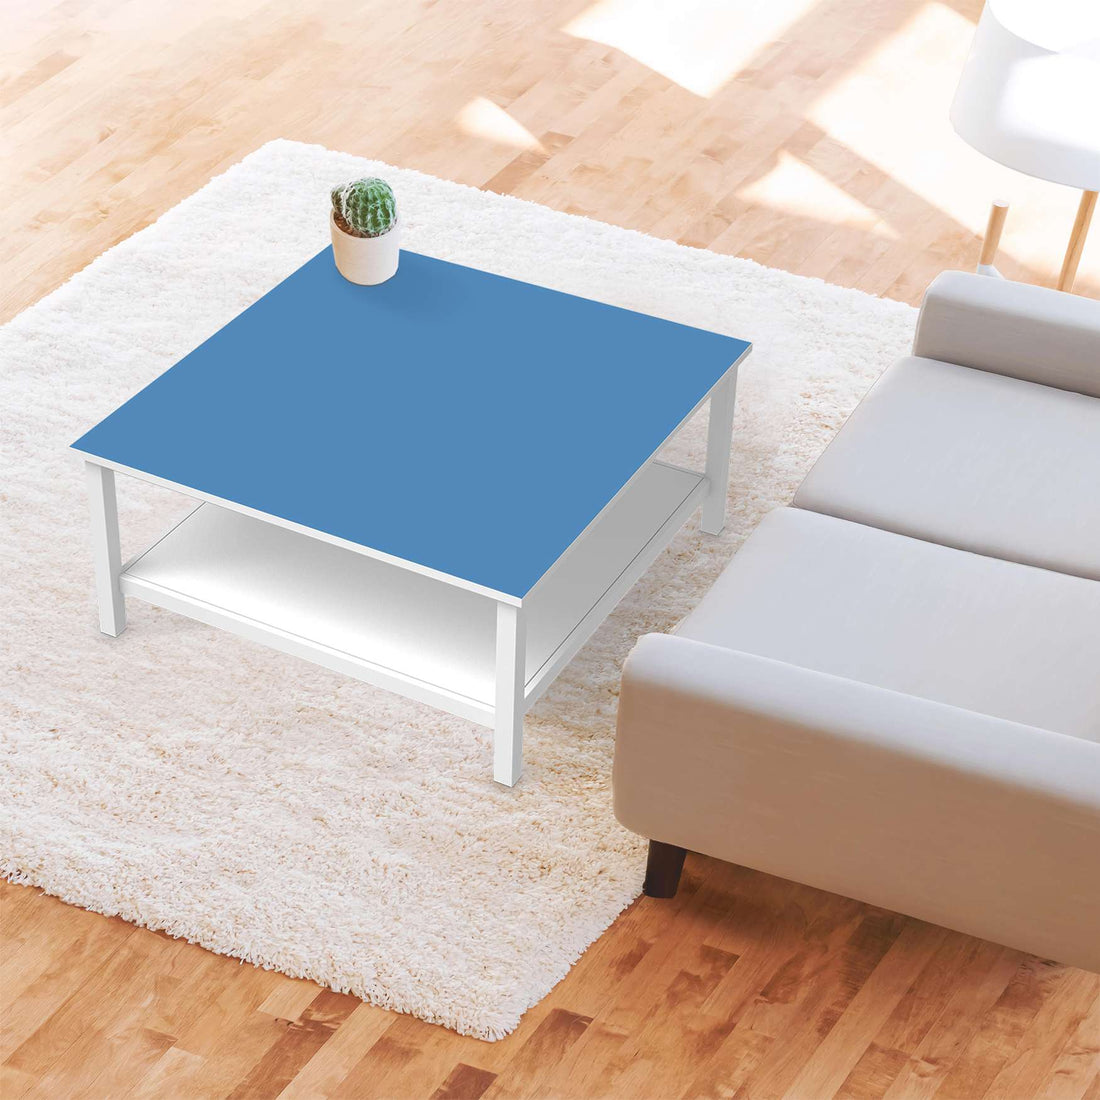 Klebefolie für Möbel Blau Light - IKEA Hemnes Couchtisch 90x90 cm - Wohnzimmer